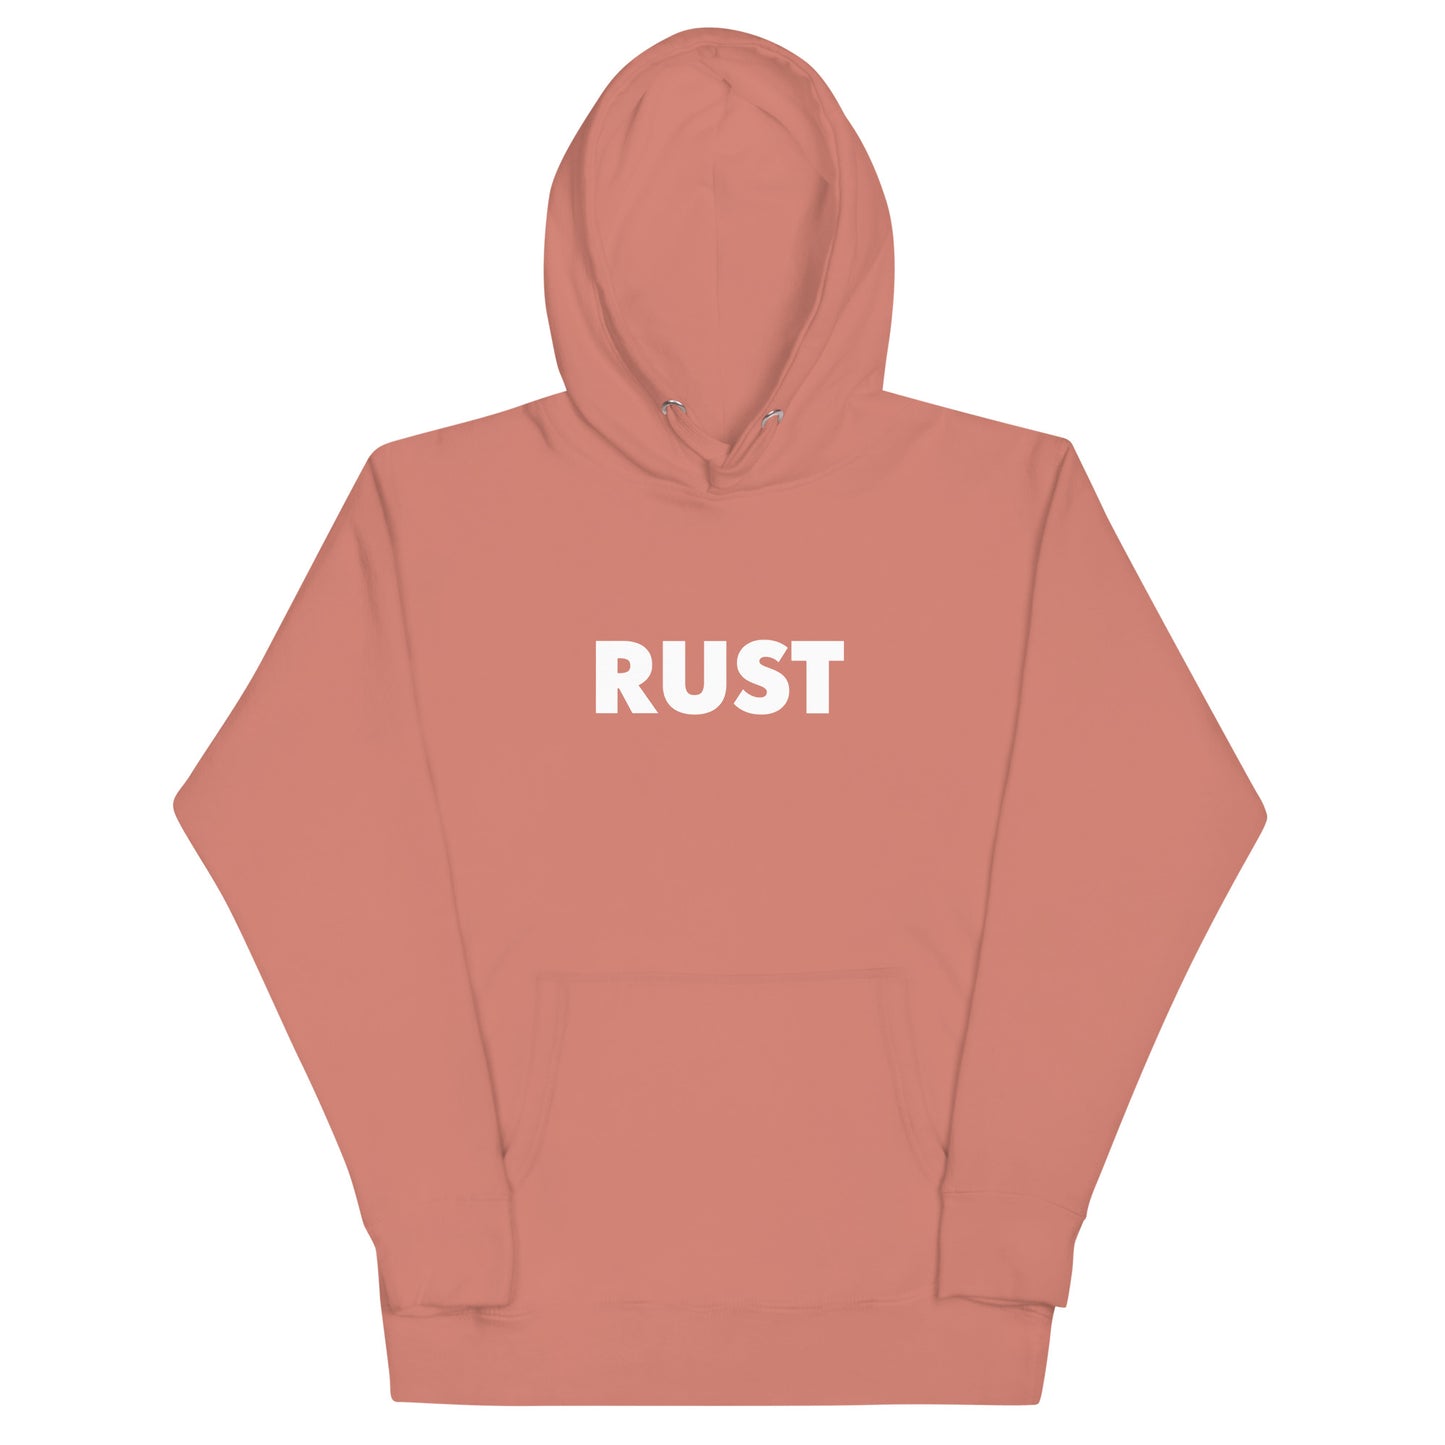 Premium Rust Unisex Hoodie